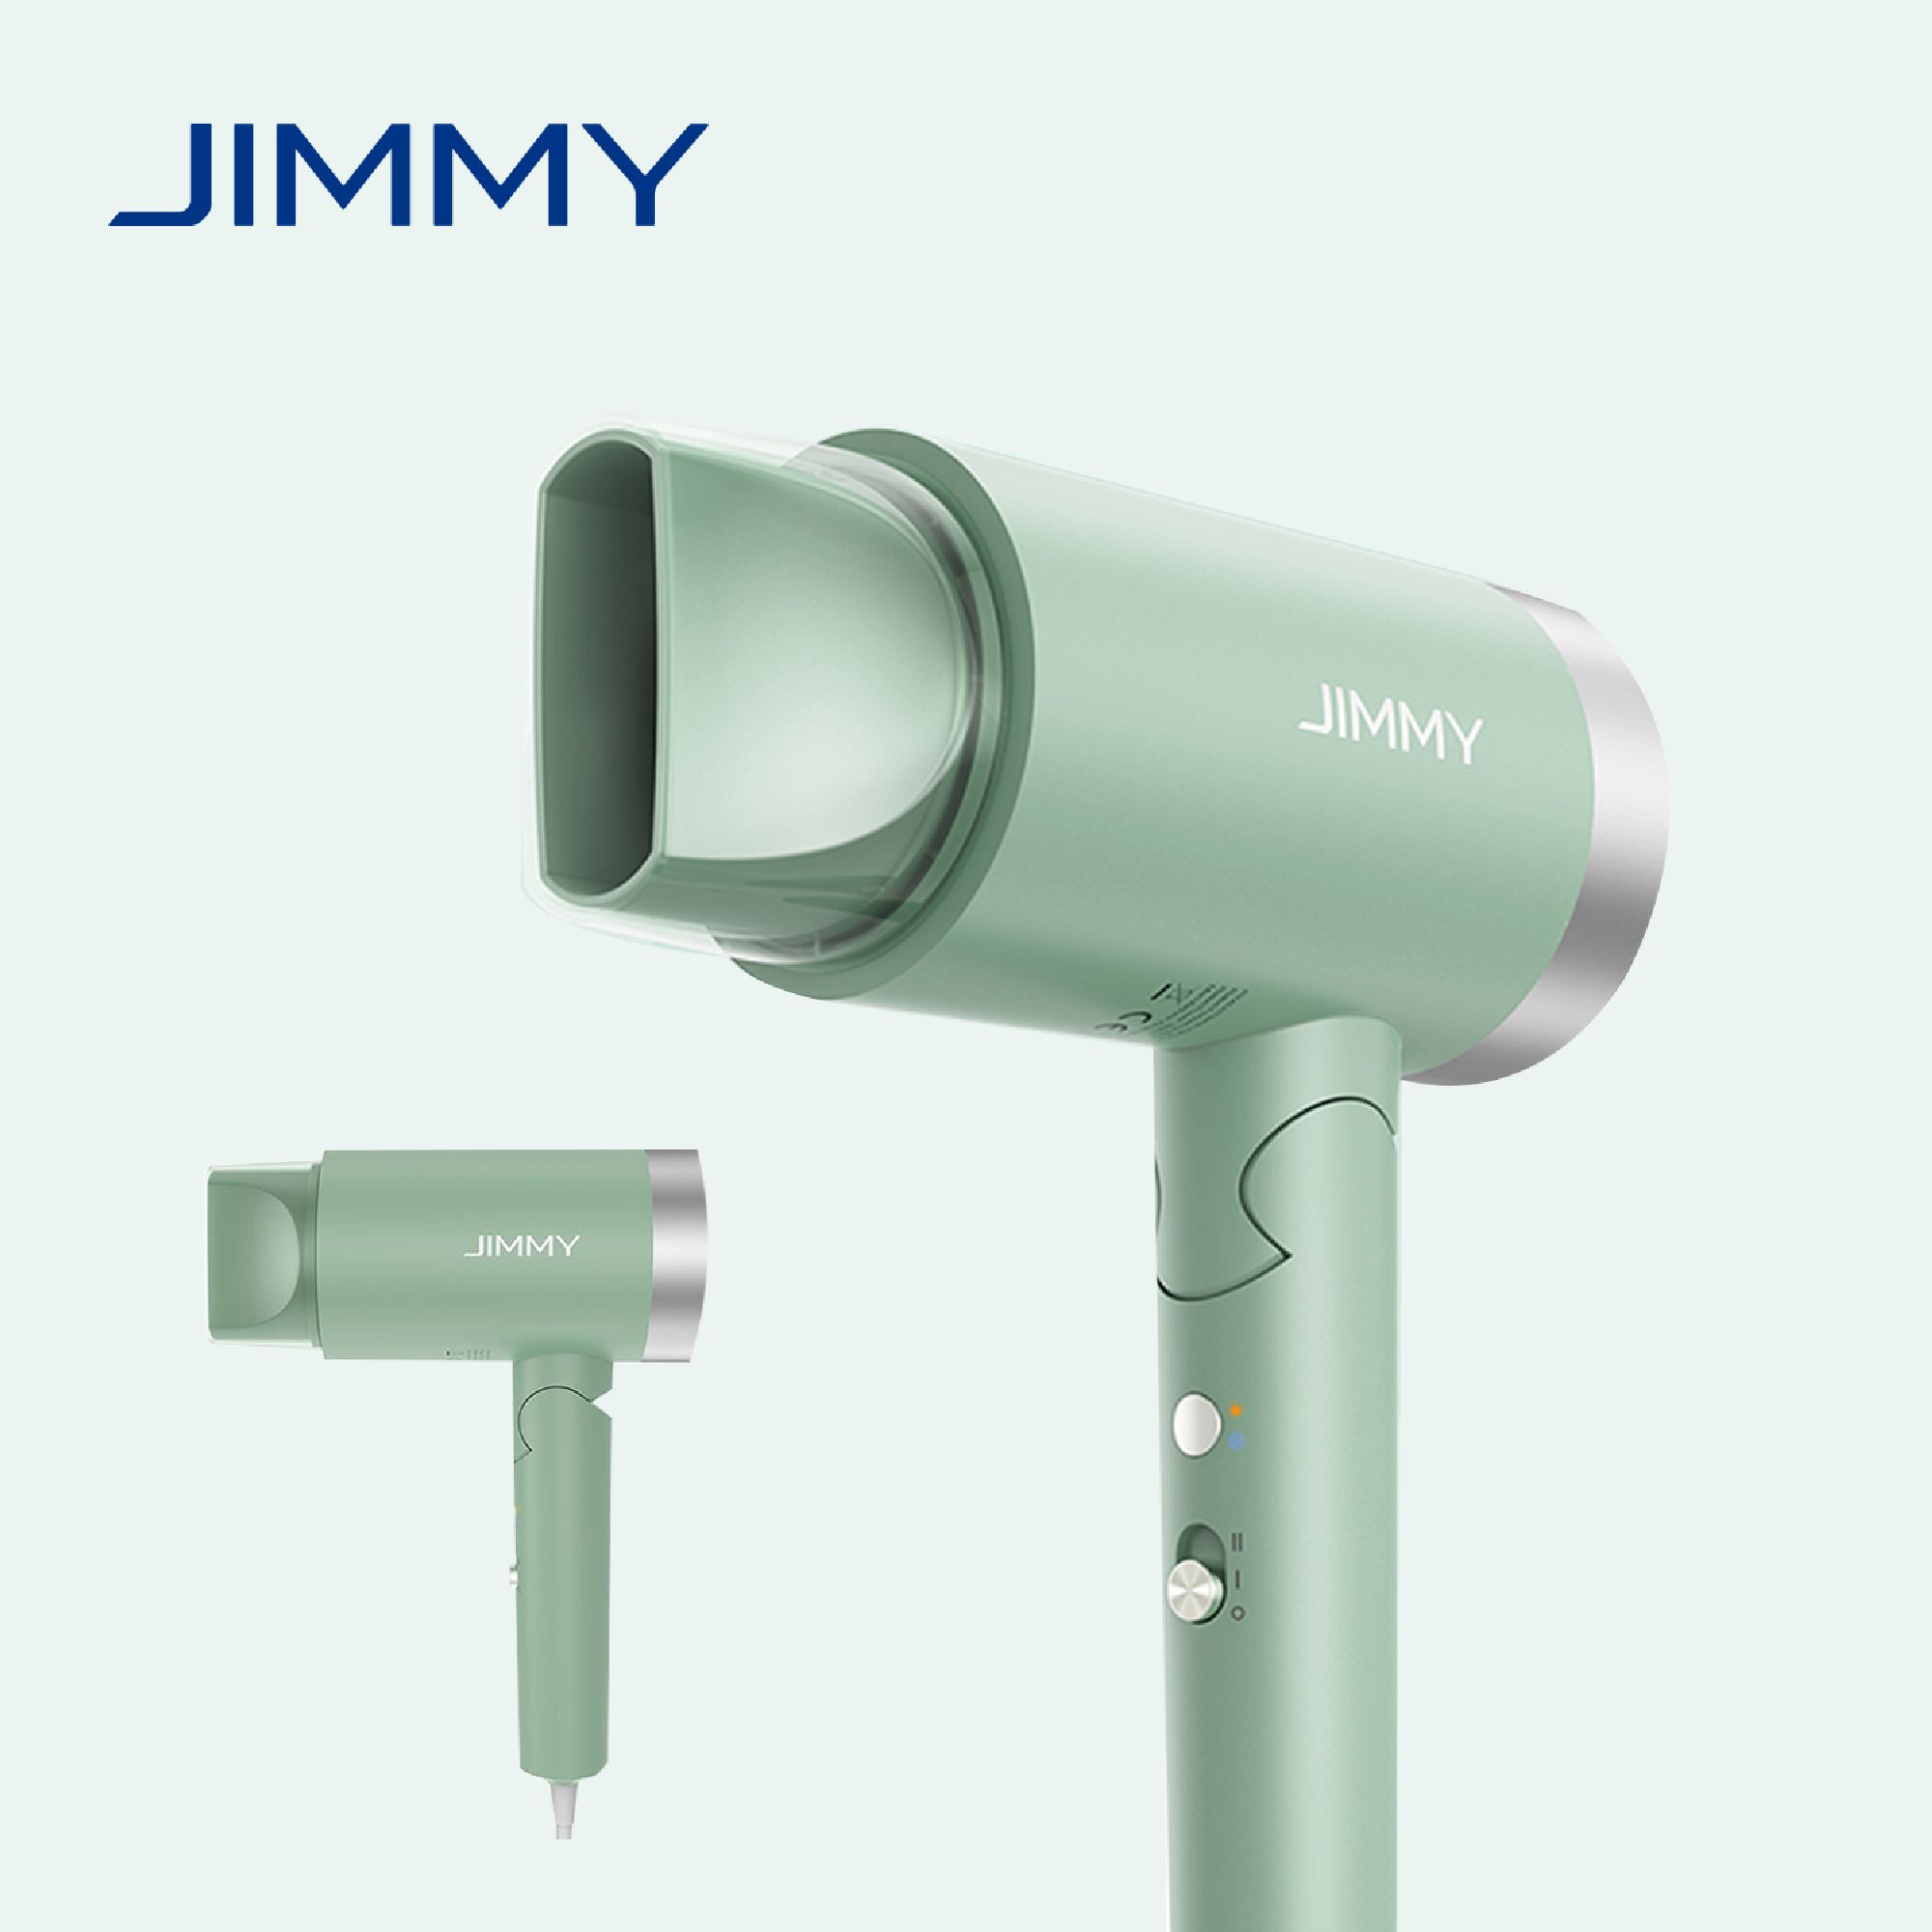 Фен Jimmy F2 1800Вт, режимов: 2, насадок: 1, ионизация, зеленый - фото 1